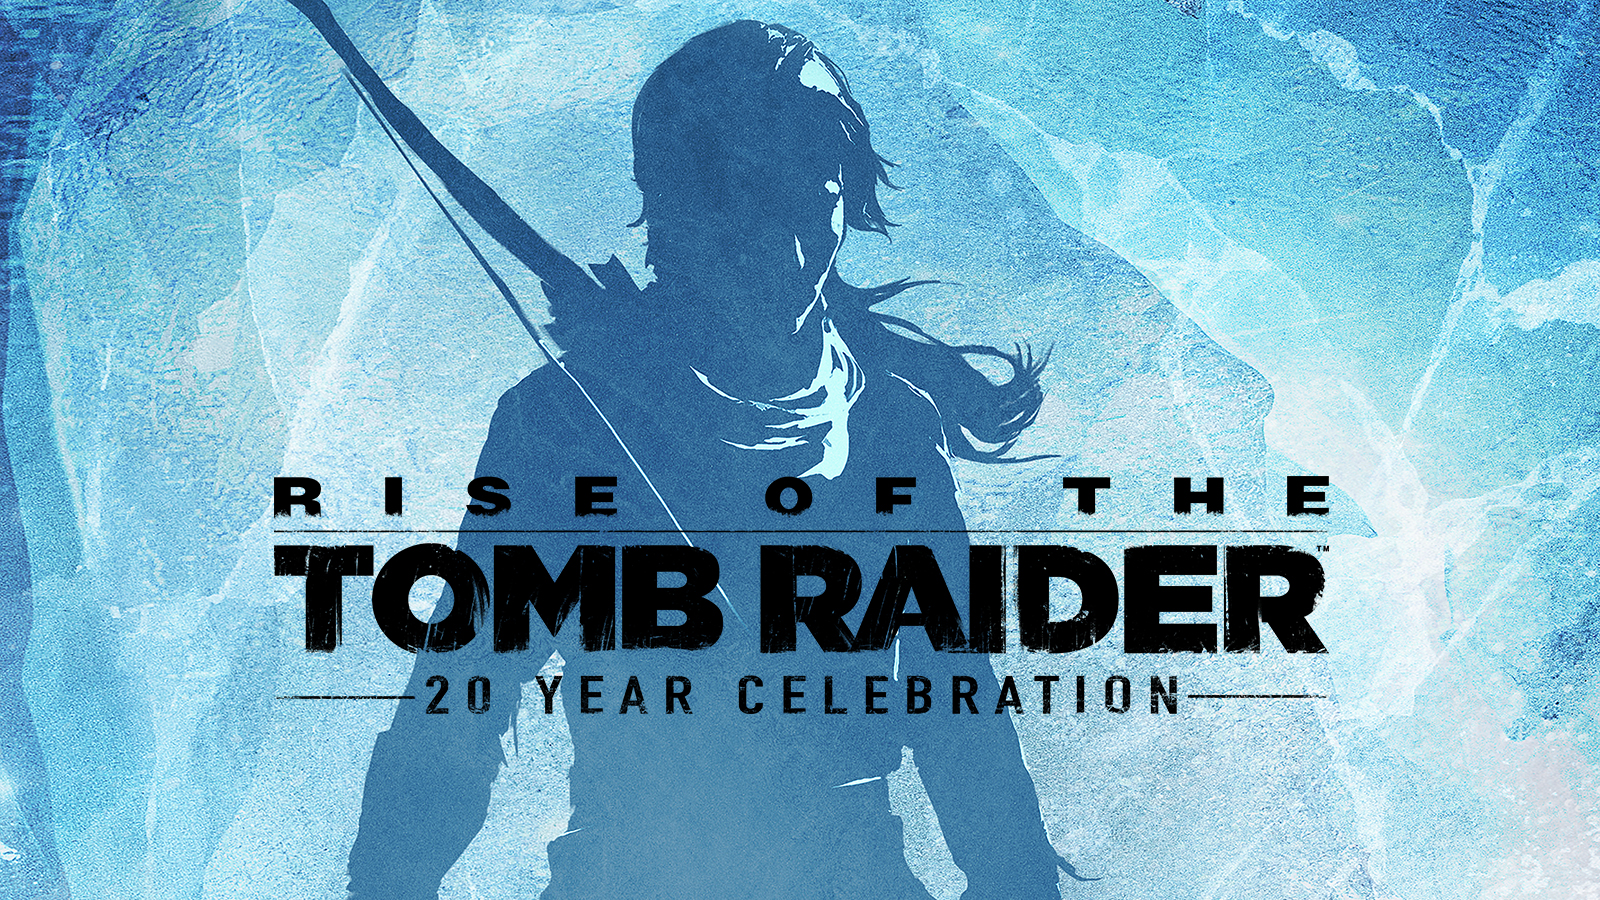 Risorsa grafica - foto, screenshot o immagine in genere - relativa ai contenuti pubblicati da unixzone.it | Nome immagine: news27862_Rise-of-the-Tomb-Raider-20-Year-Celebration_1.png